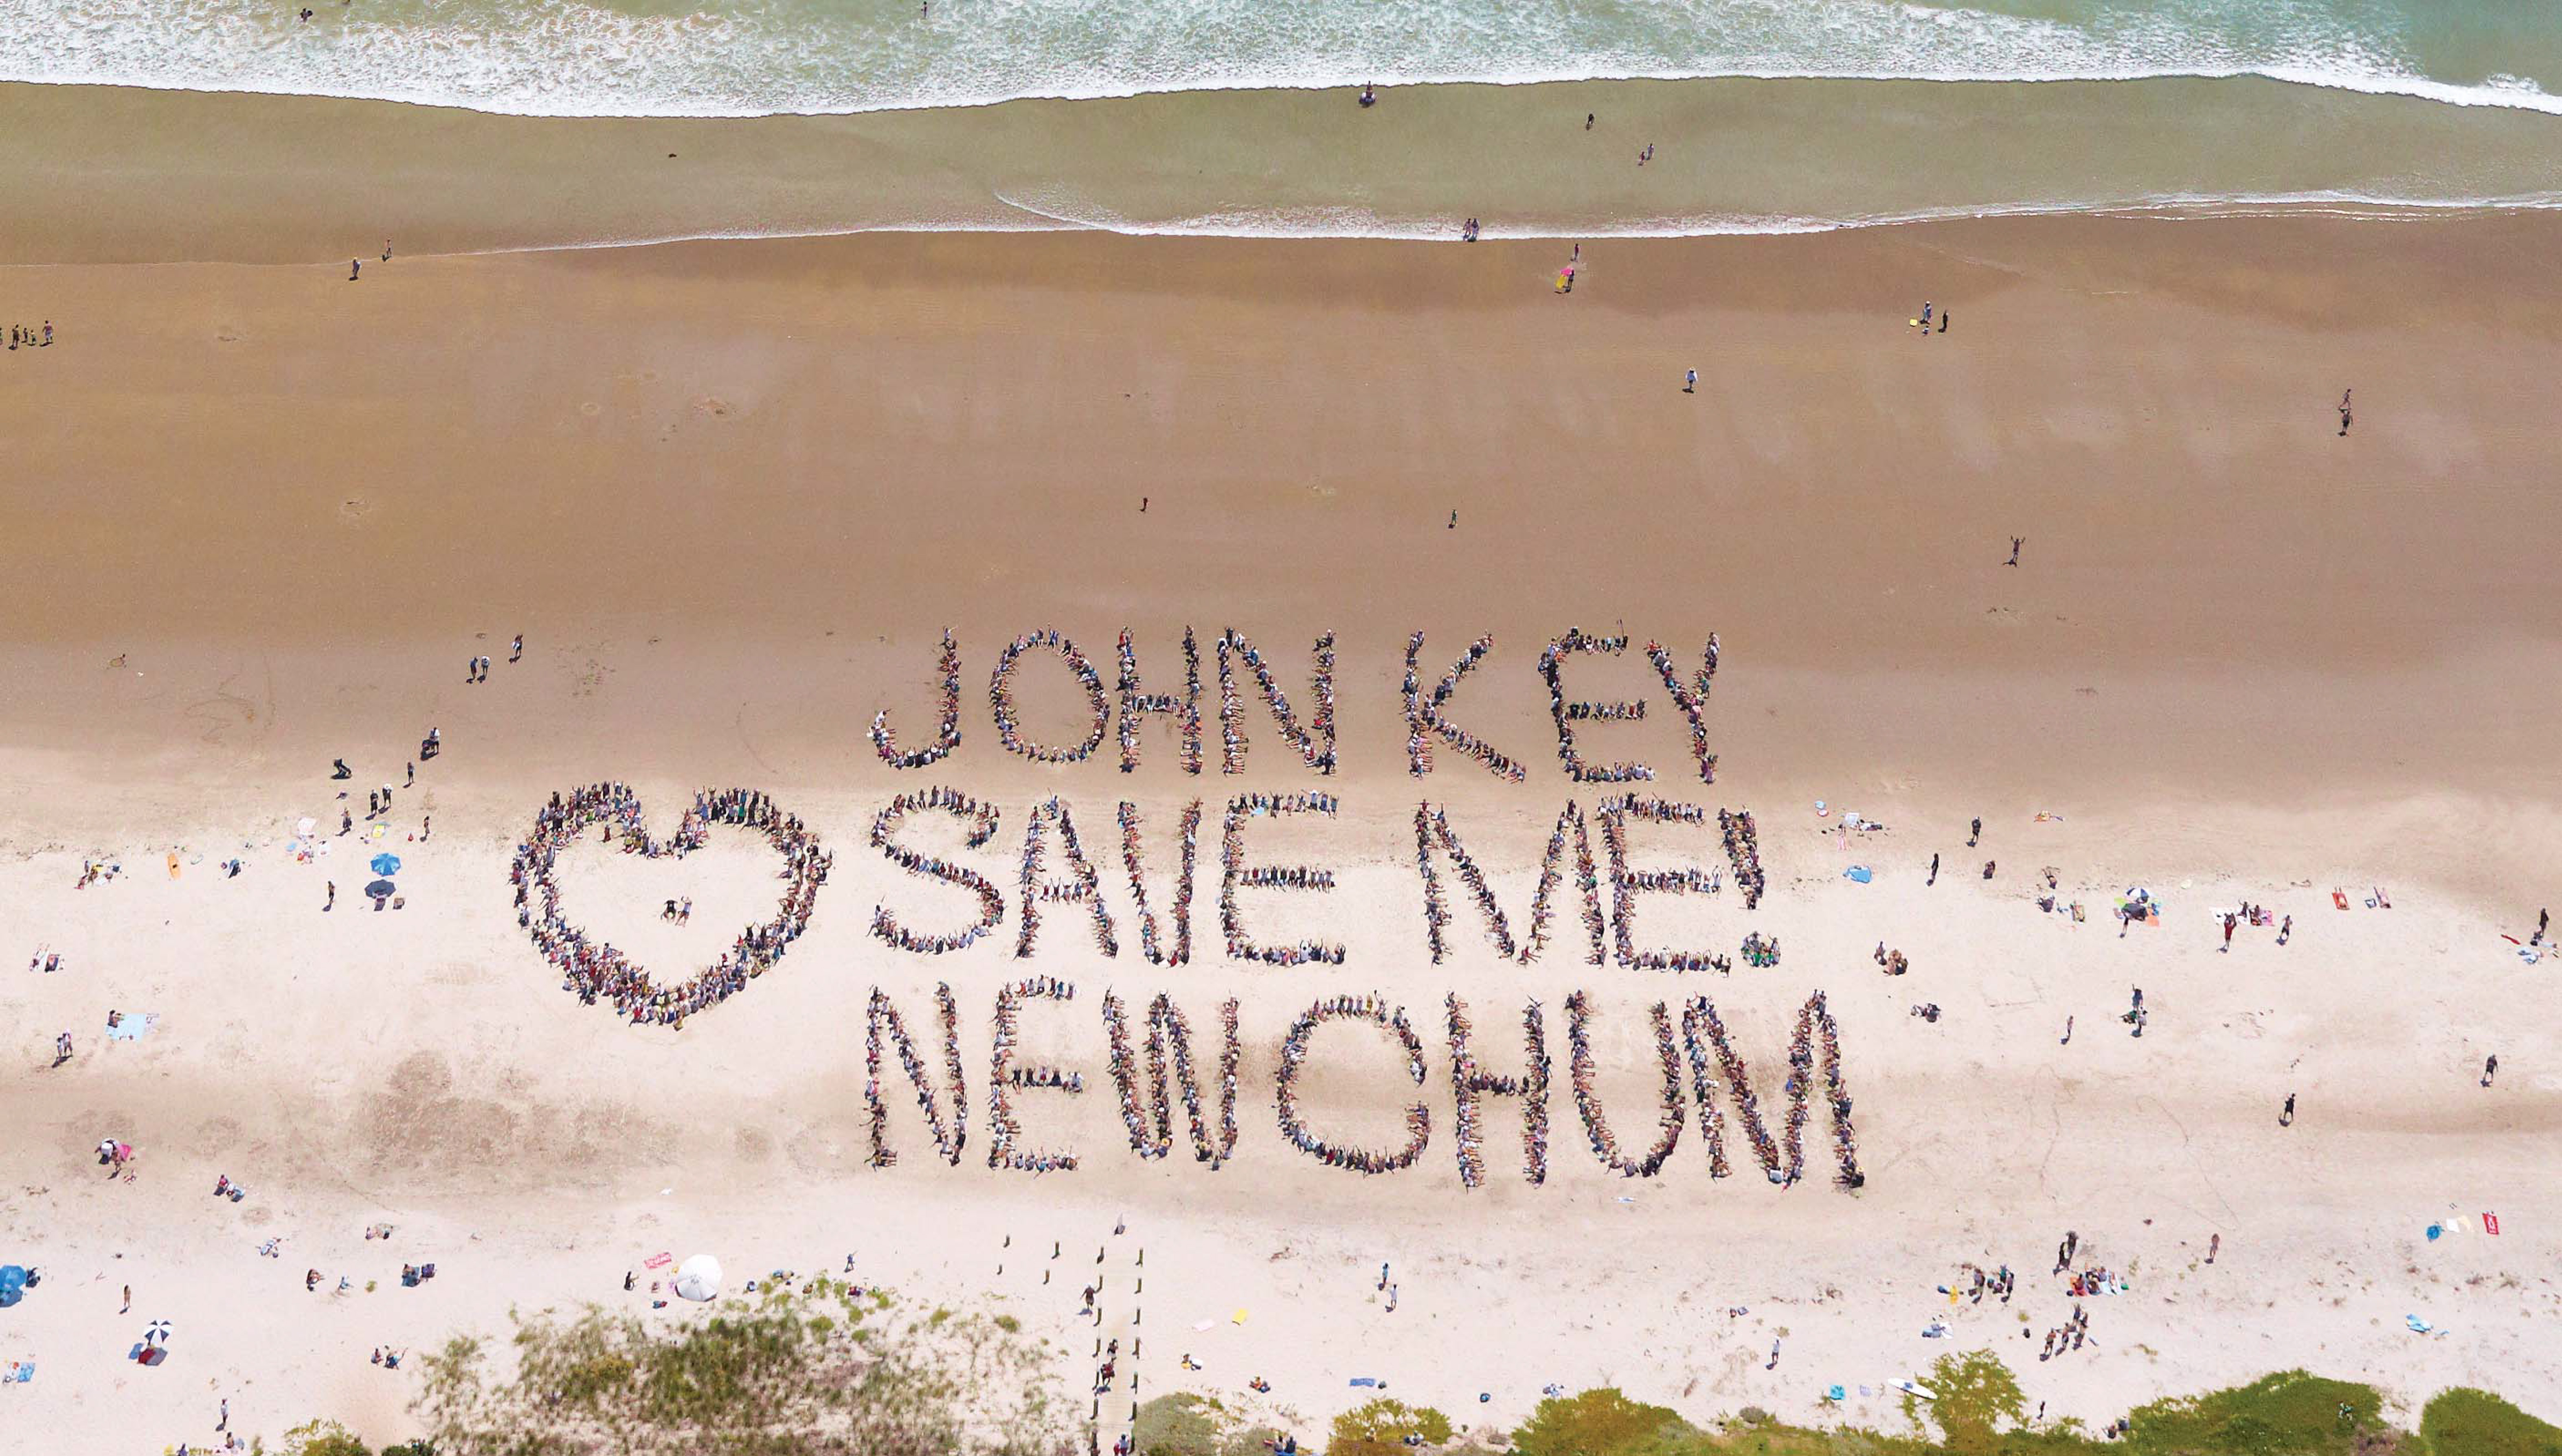 Beach-goers send a message